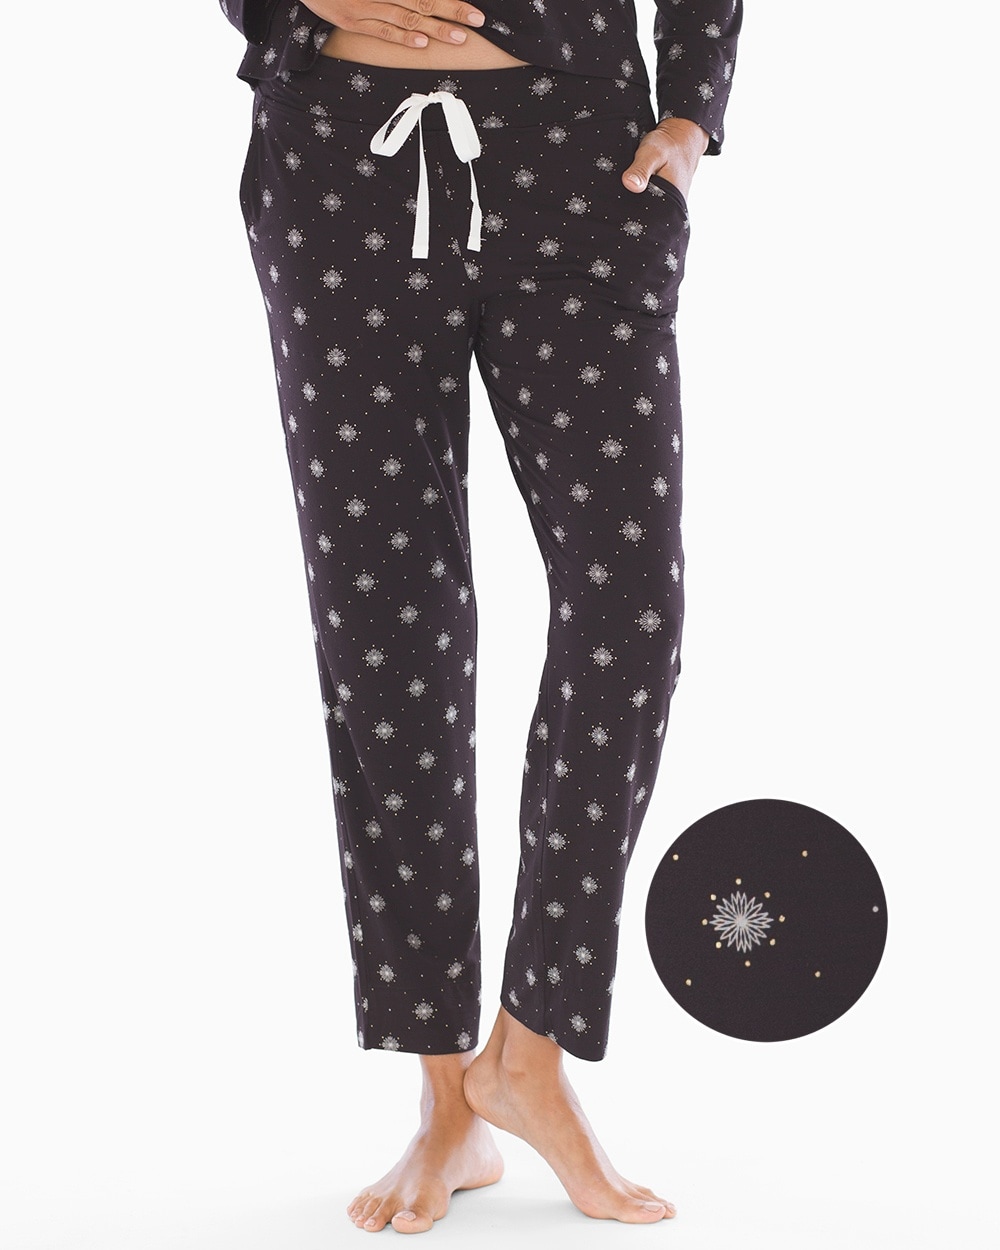 Cool Nights Grosgrain Trim Ankle Pajama Pants Snowflakes Black